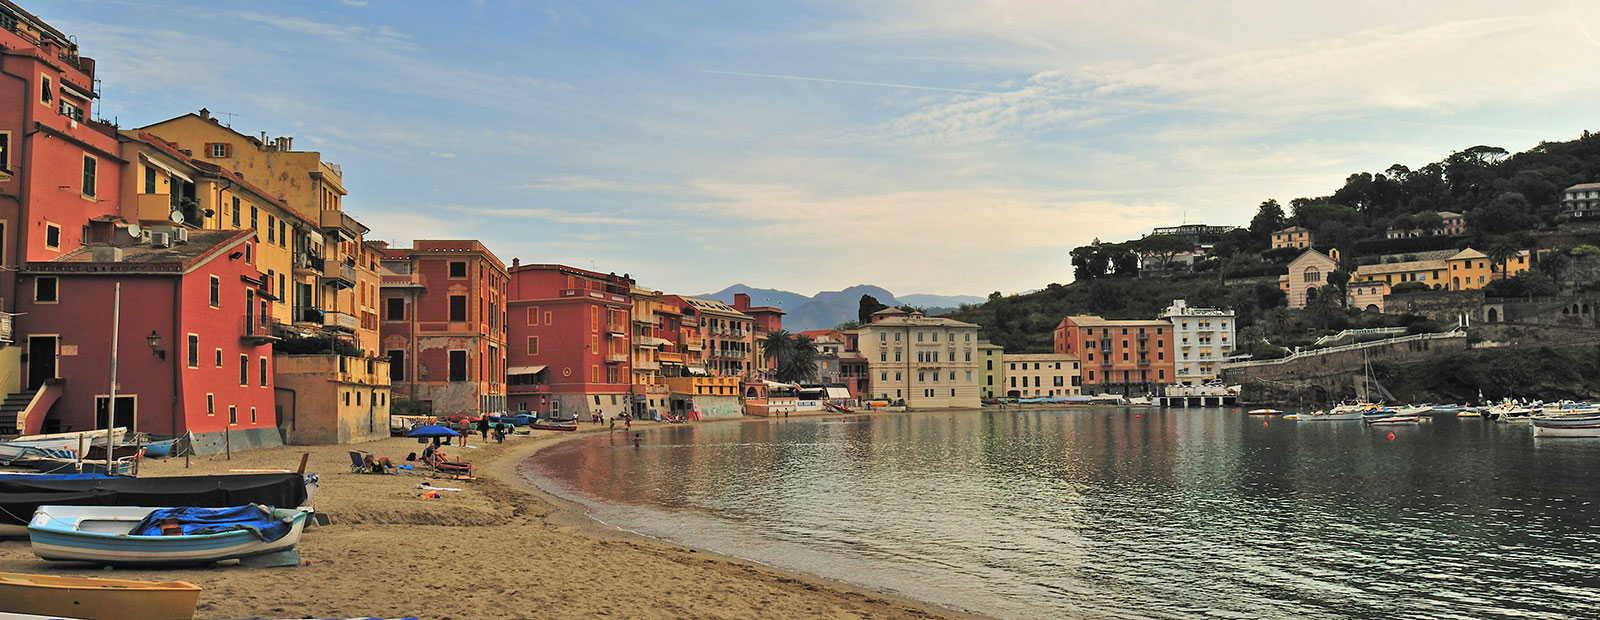 Exclusive holiday villas in Liguria